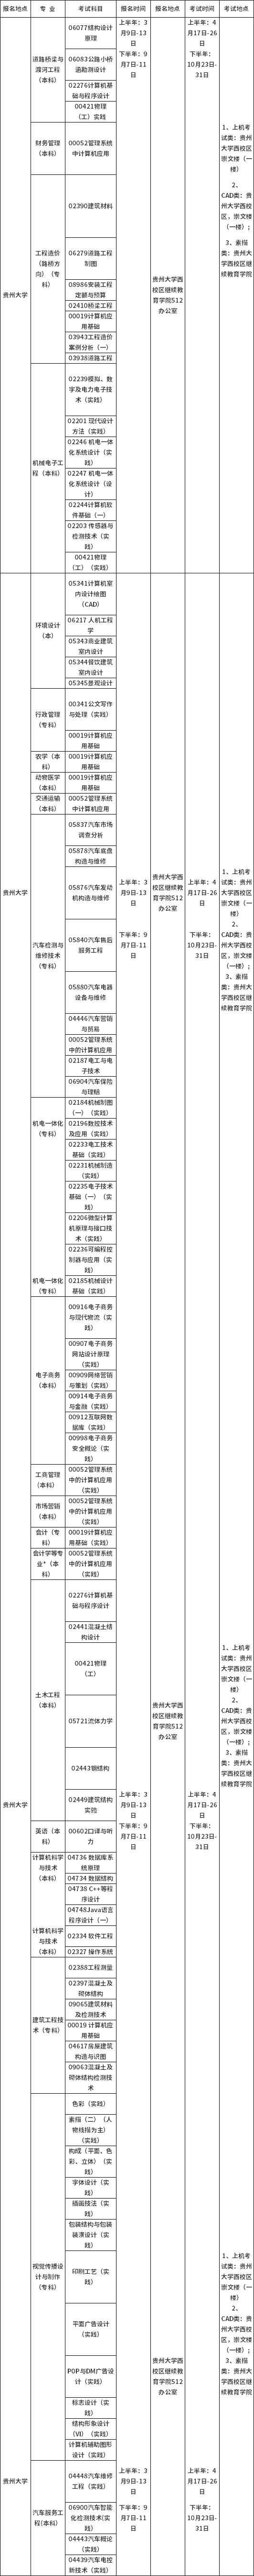 贵州省2021年高等教育自学考试各专业实践性环节考核安排